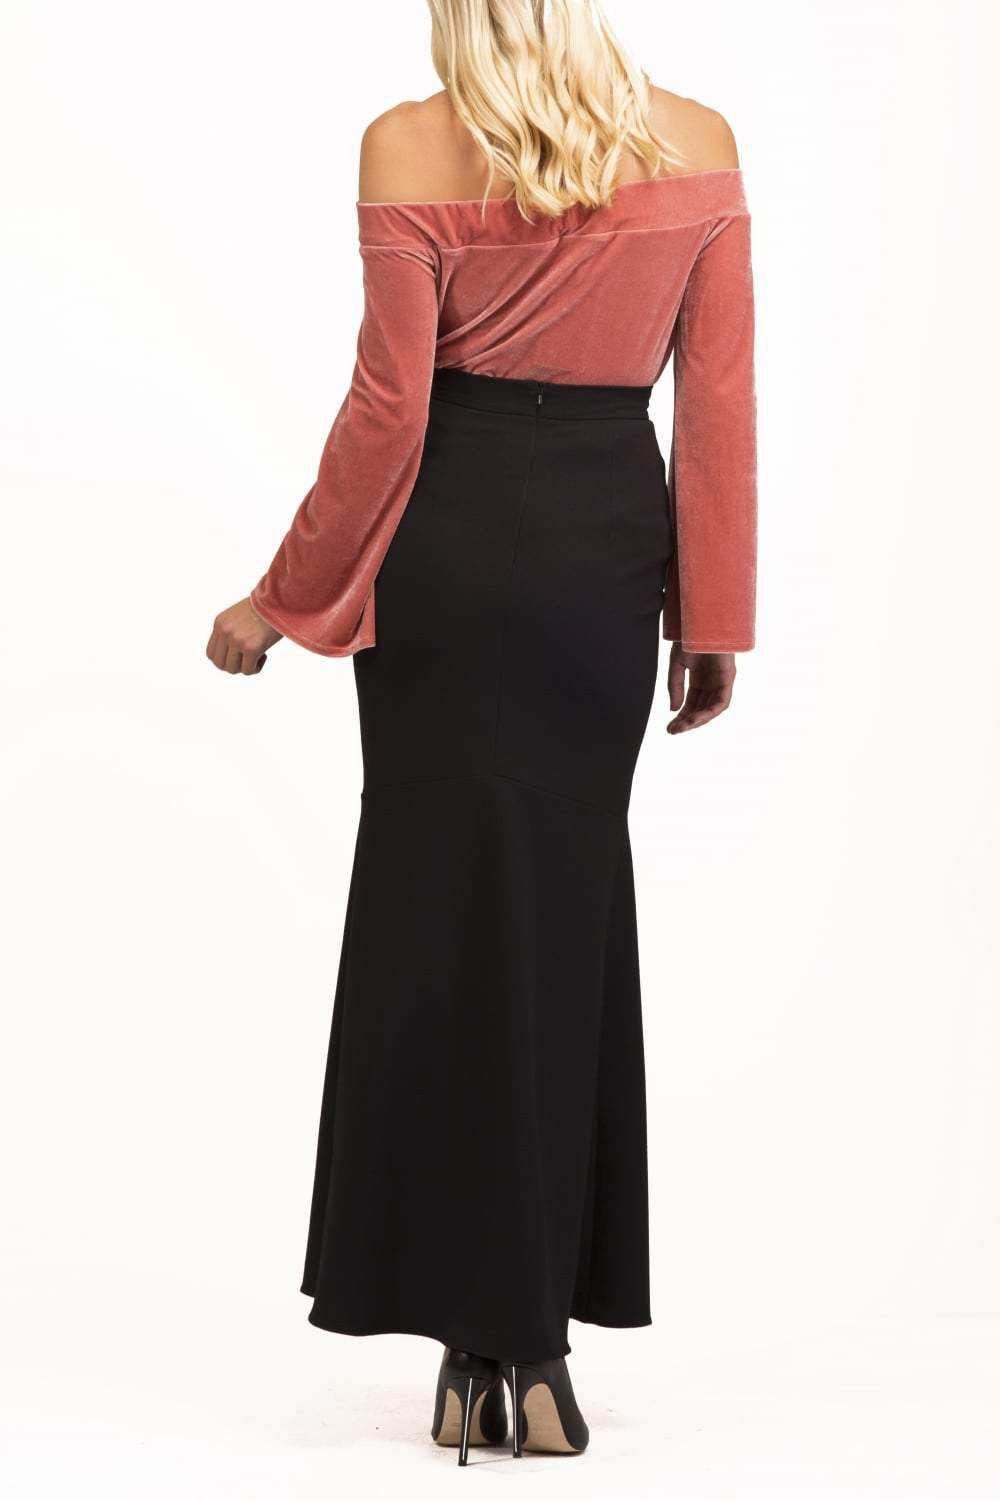 Esoteric Black Long Fishtail Skirt